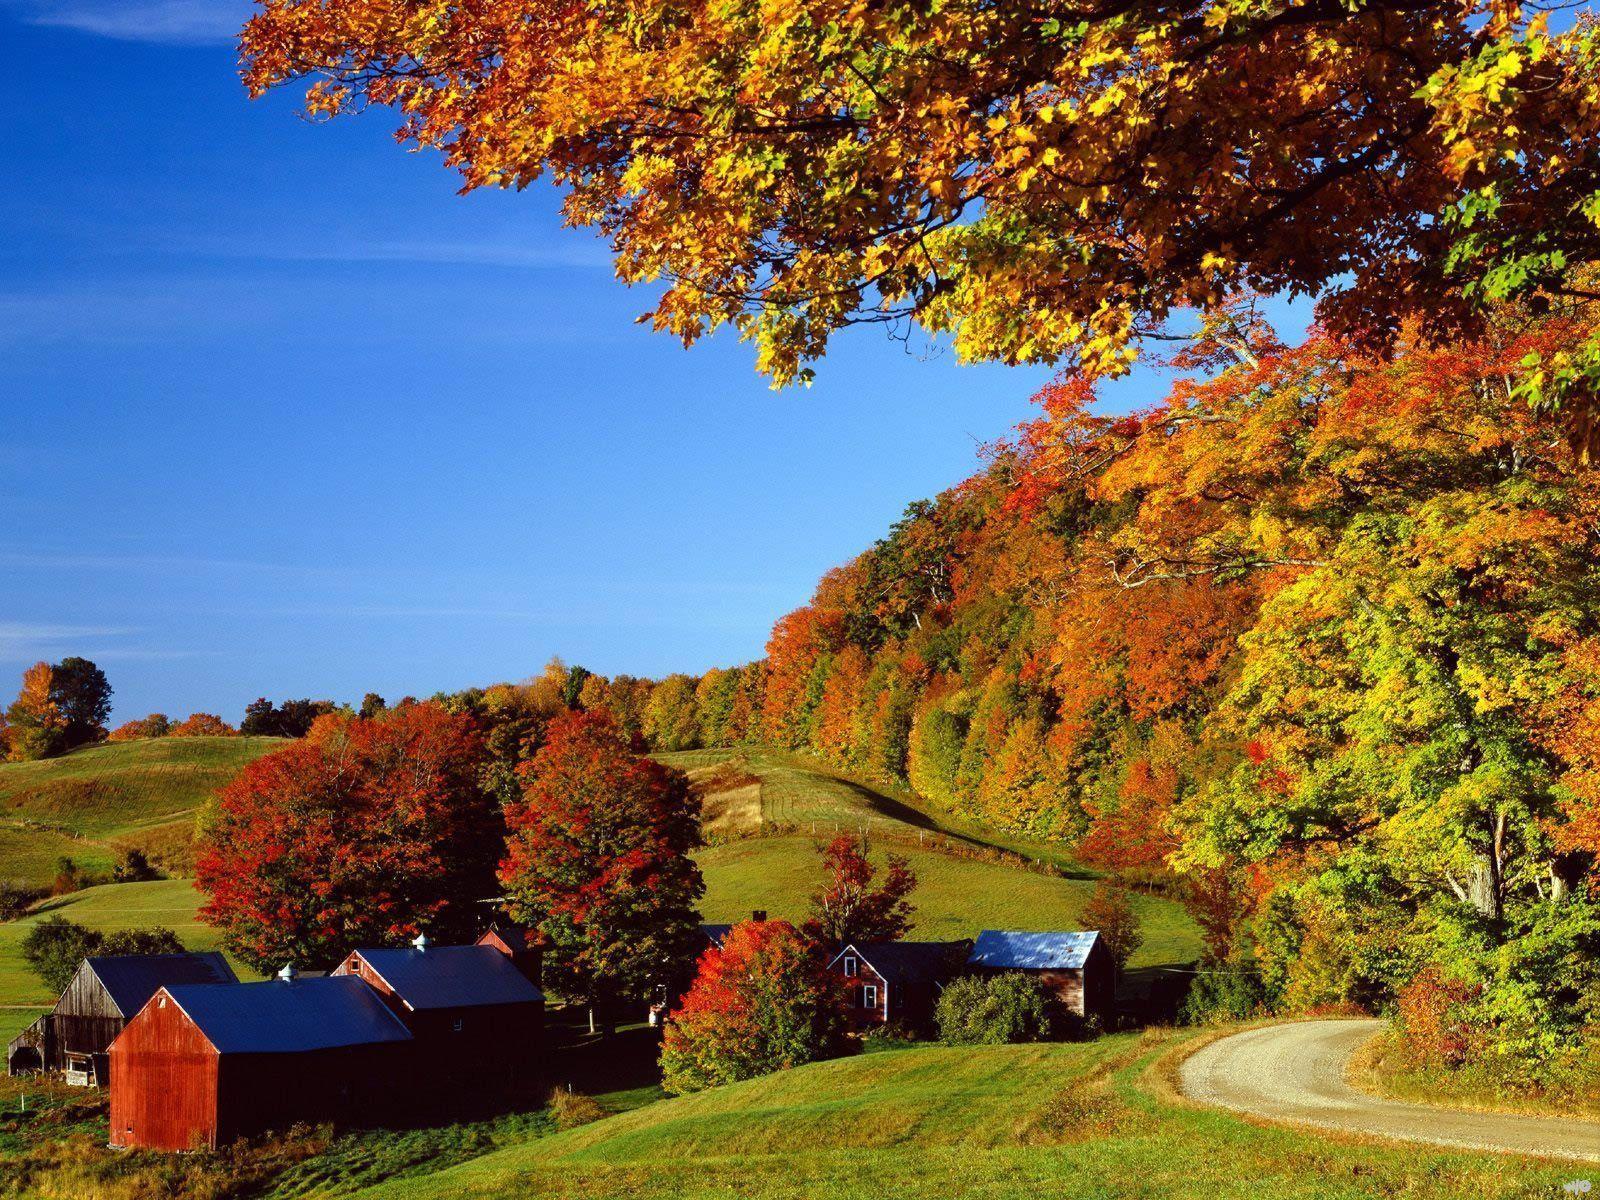 Autumn Landscape Wallpaper